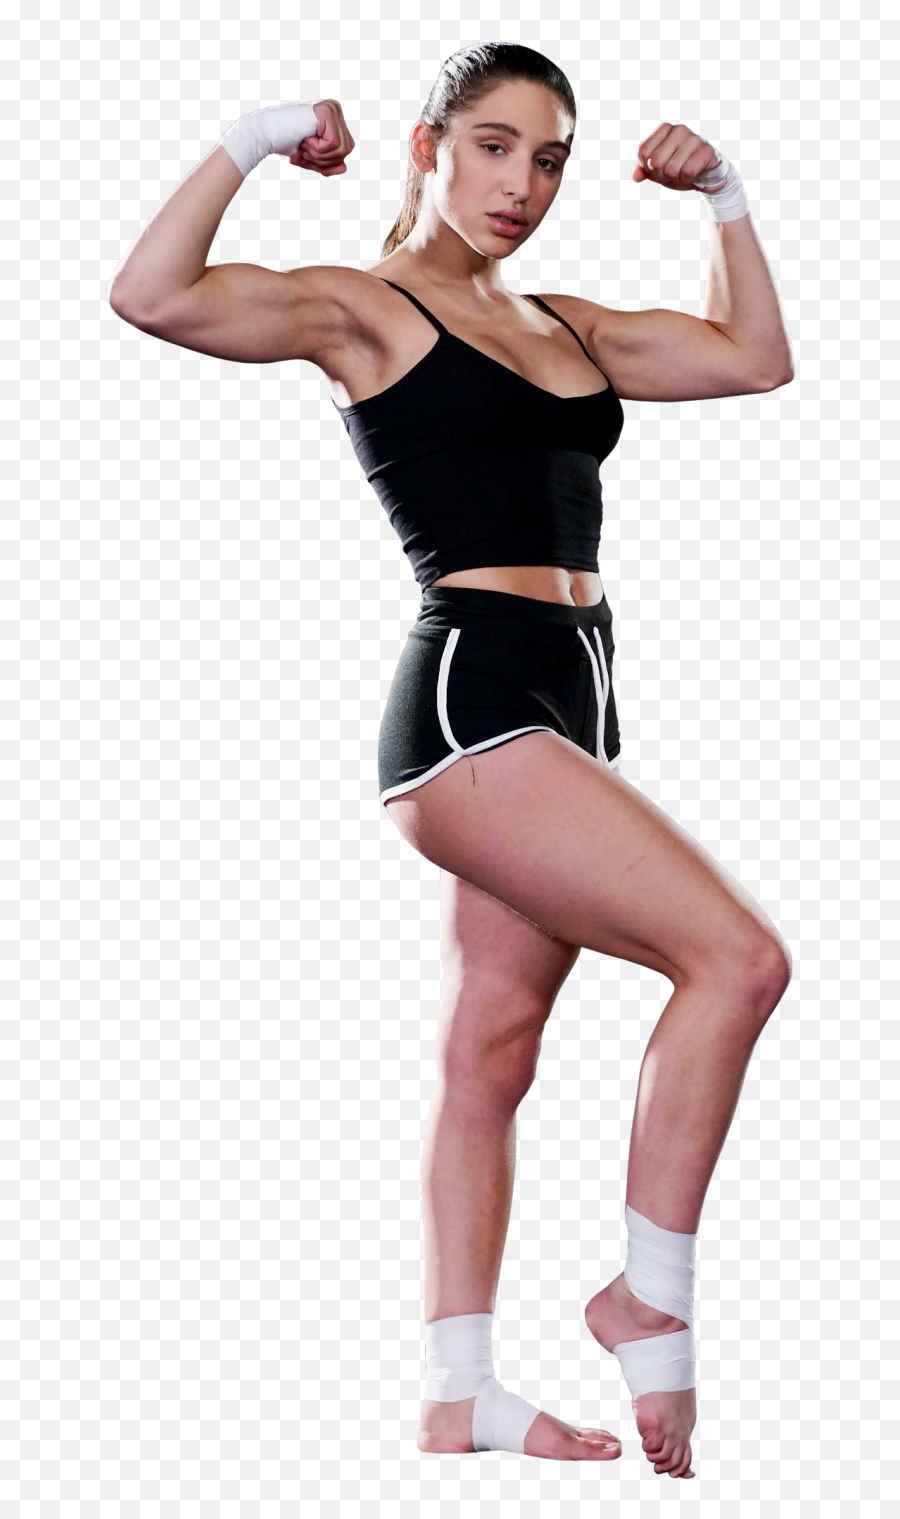 Abella Danger Muscle Pose Png Image - Lana Rhoades Abella Danger,Muscles Png